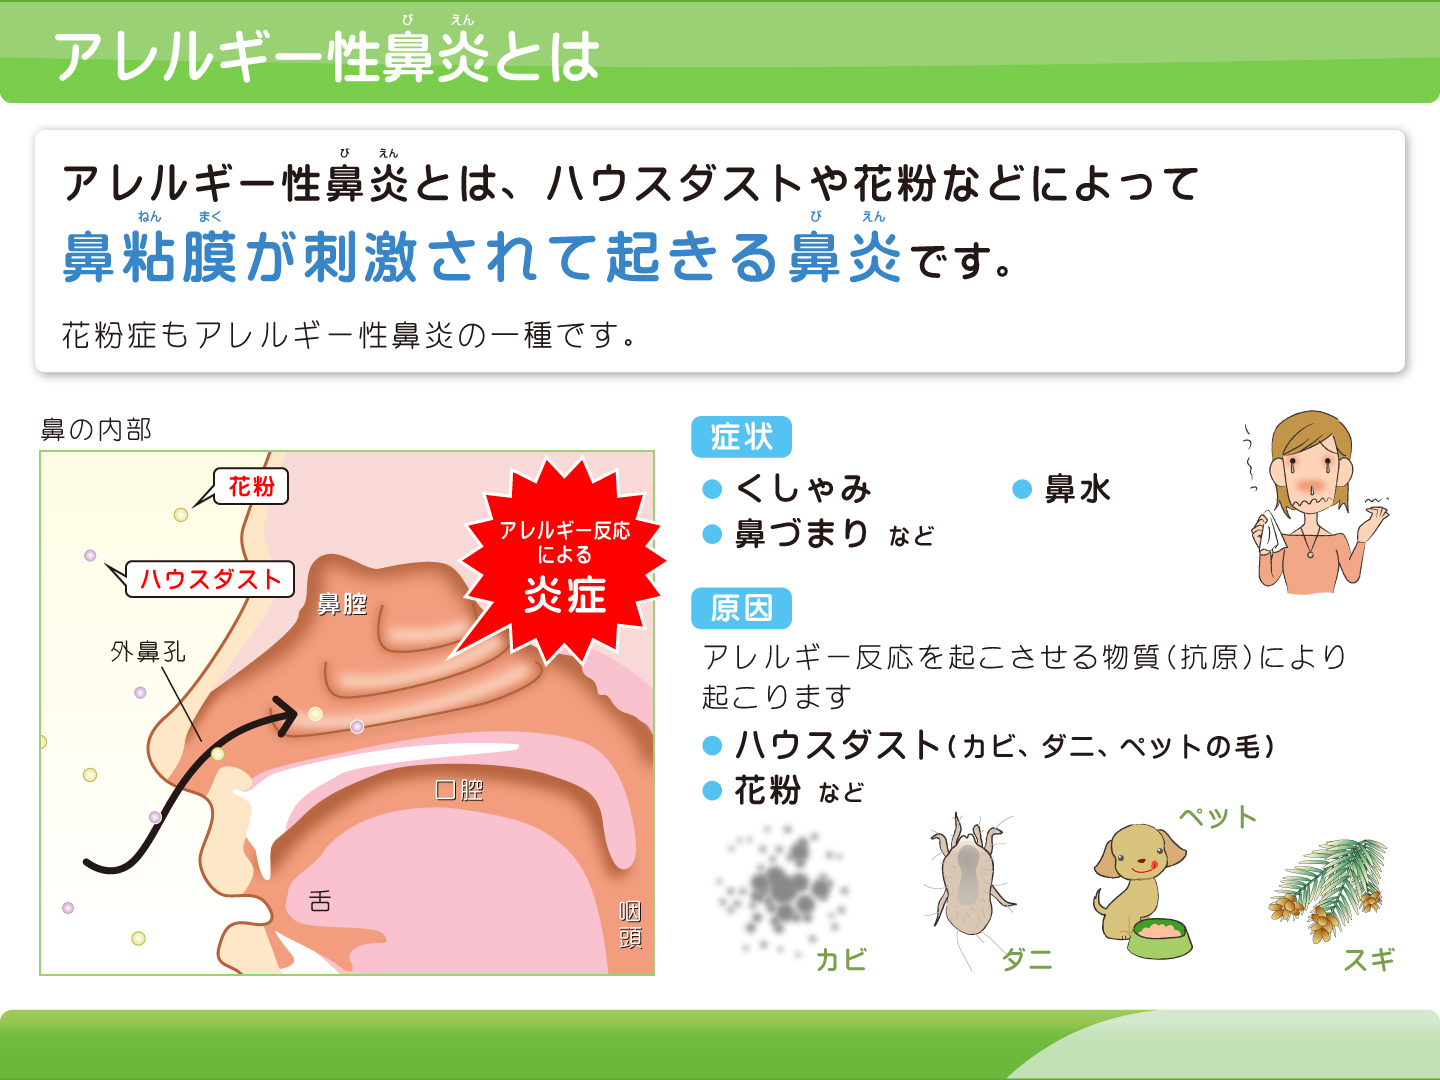 【画像】アレルギー性鼻炎について解説